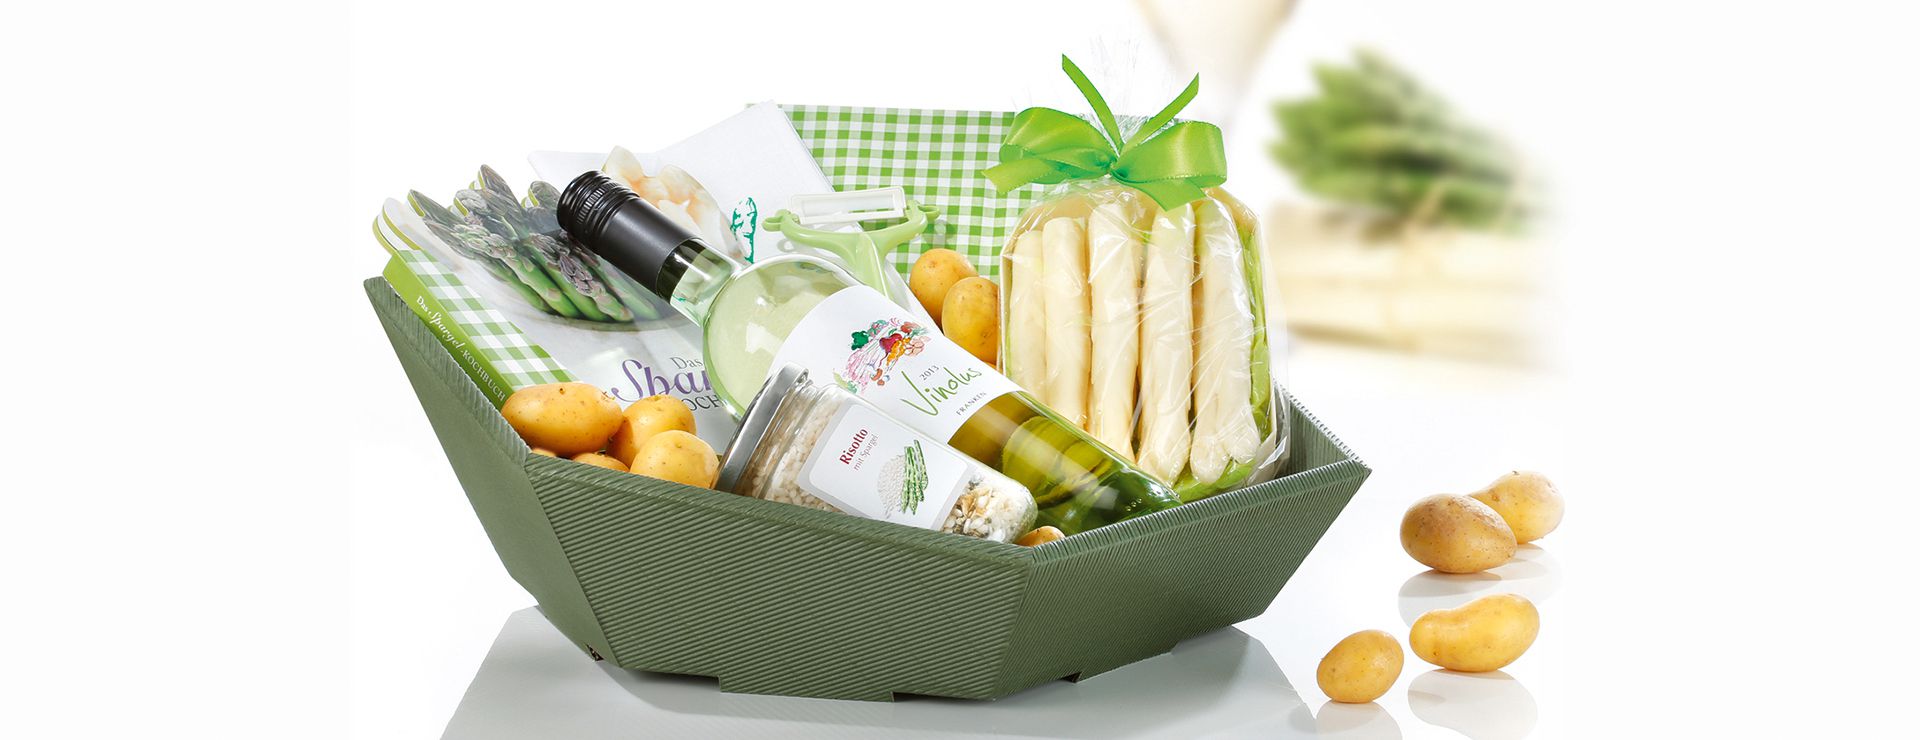 Panier-cadeau hexagonal en carton ondulé avec biseau tourné vers l’avant dedans du vin blanc et des asperges